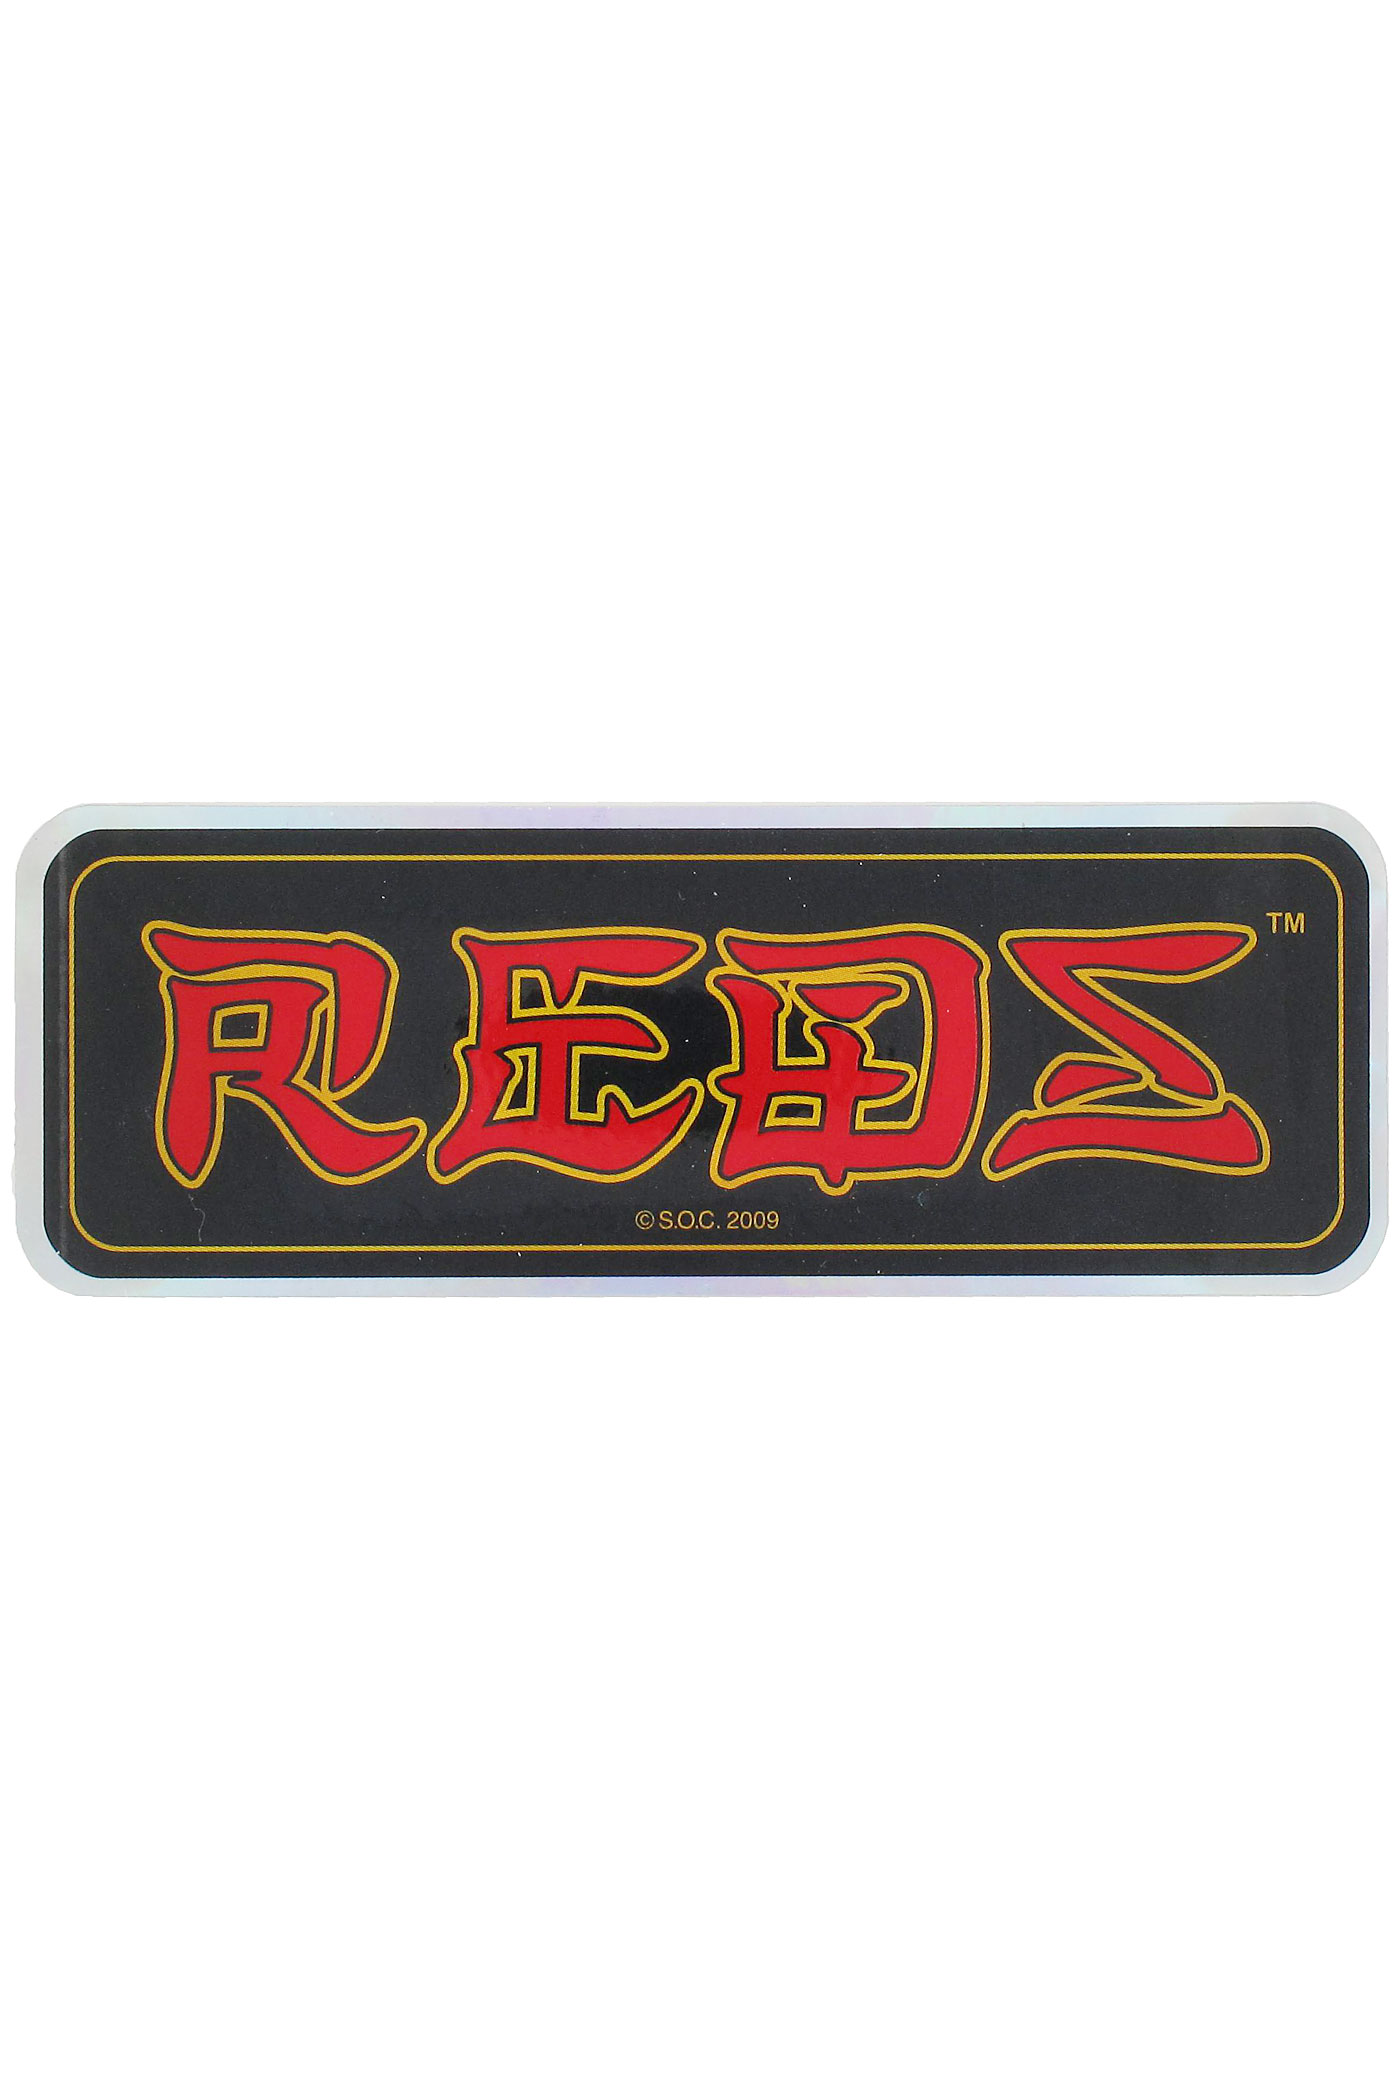 Reds Bones logo. Reds. Redz script